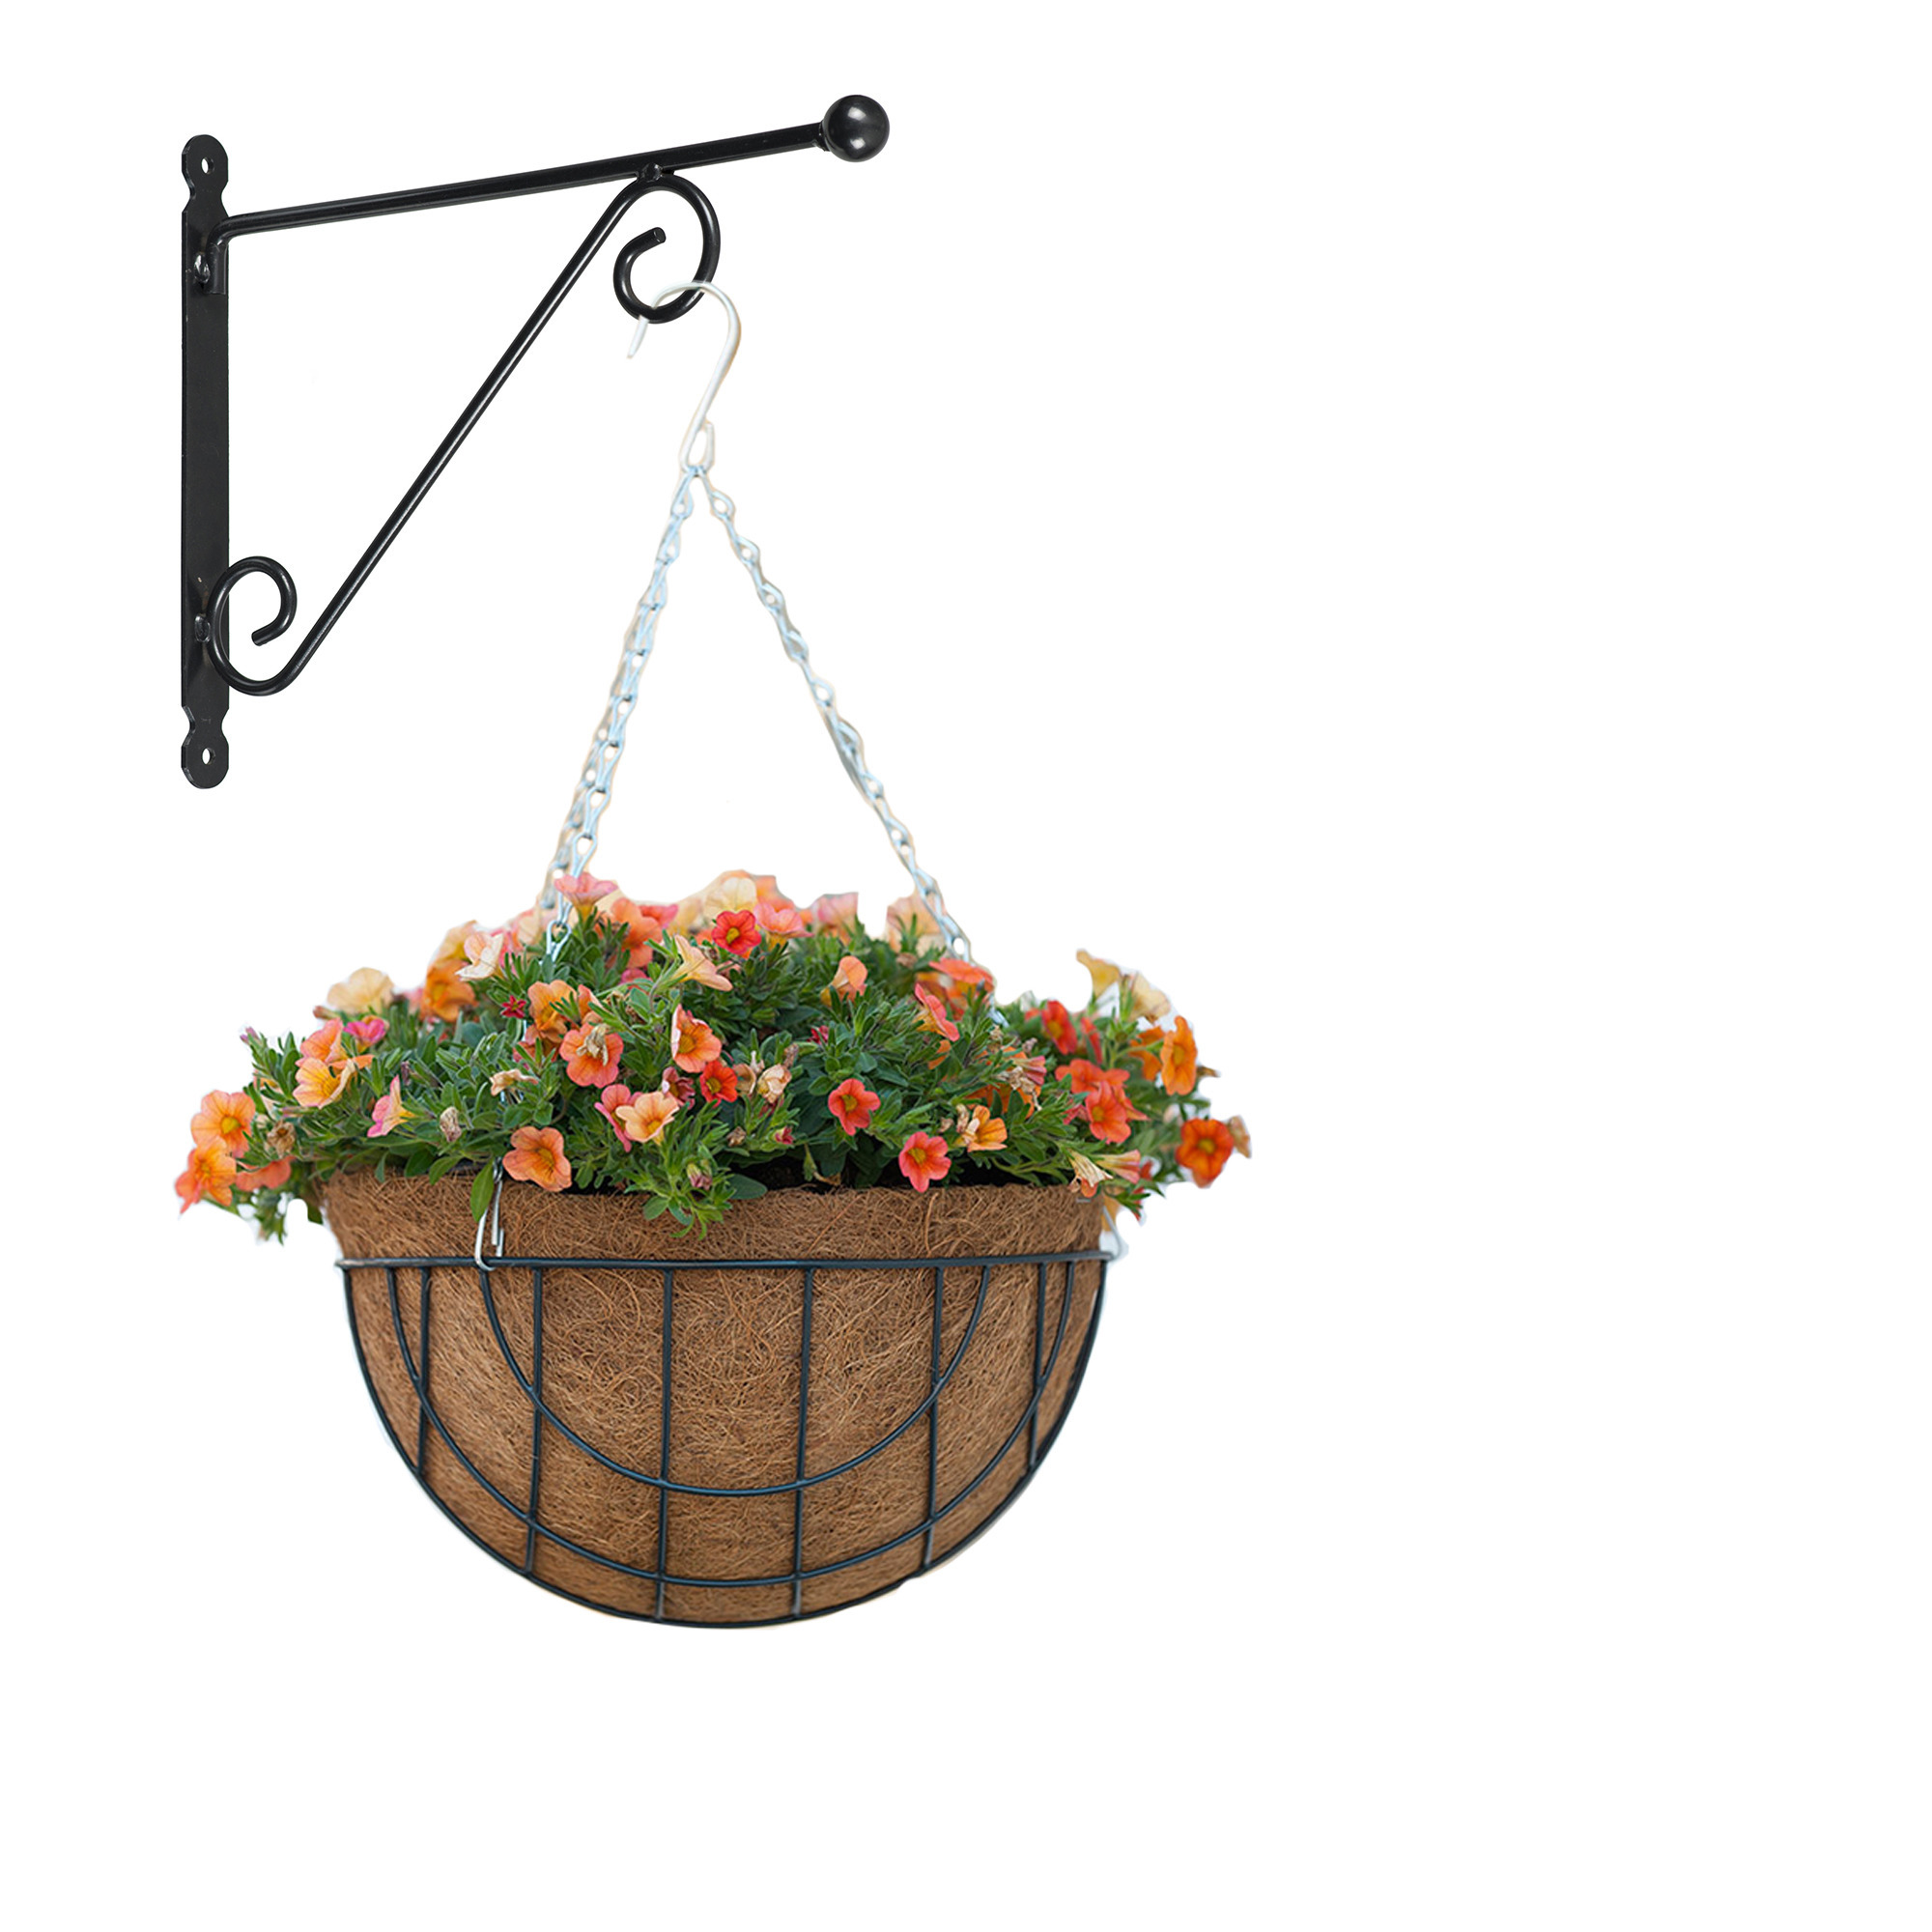 Hanging basket met muurhaak sierkrul groen en kokos inlegvel metaal complete hanging basket set